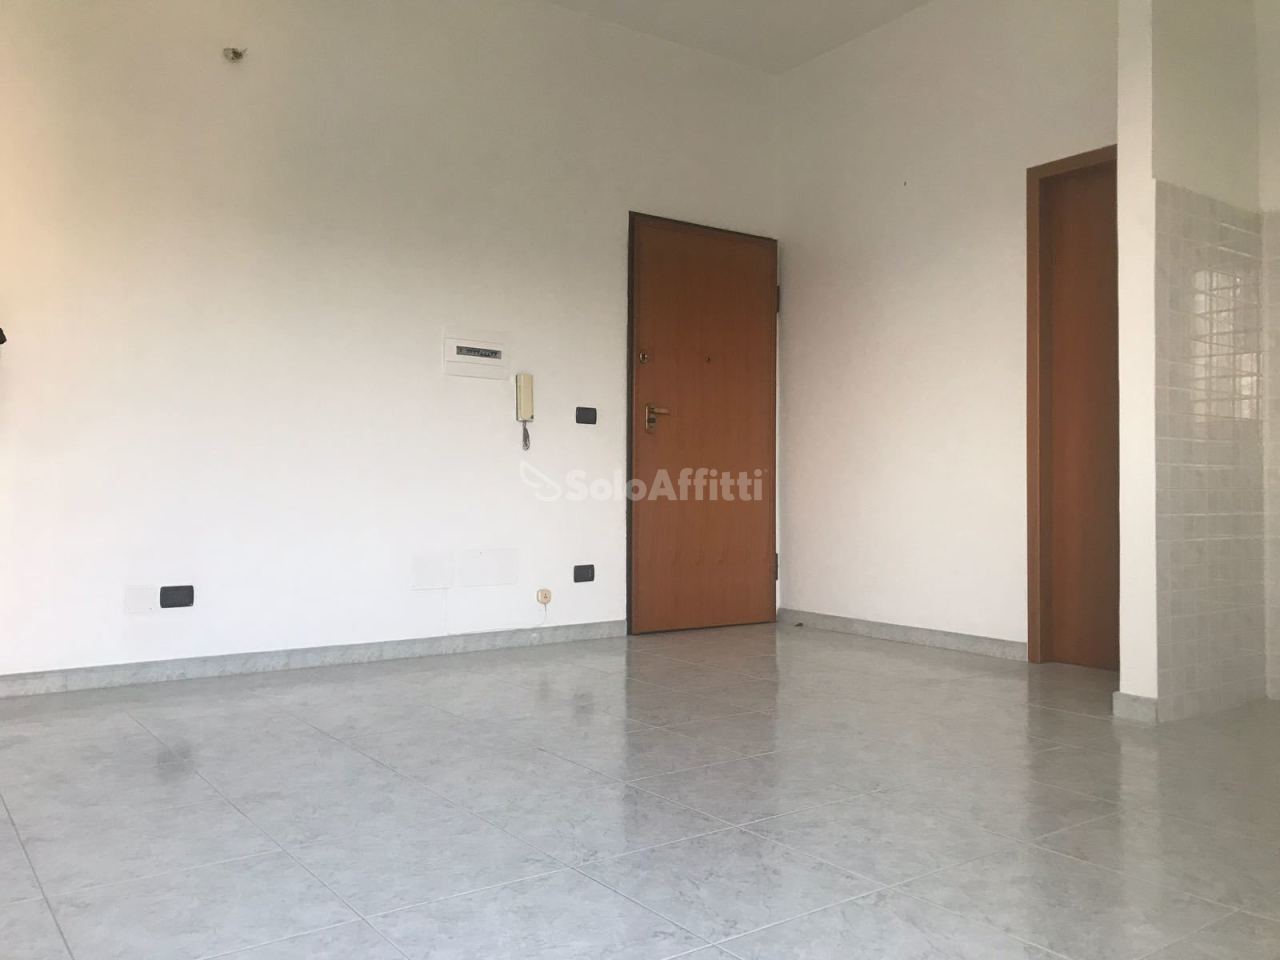 Appartamento in affitto a Reggio Calabria, 2 locali, prezzo € 300 | PortaleAgenzieImmobiliari.it